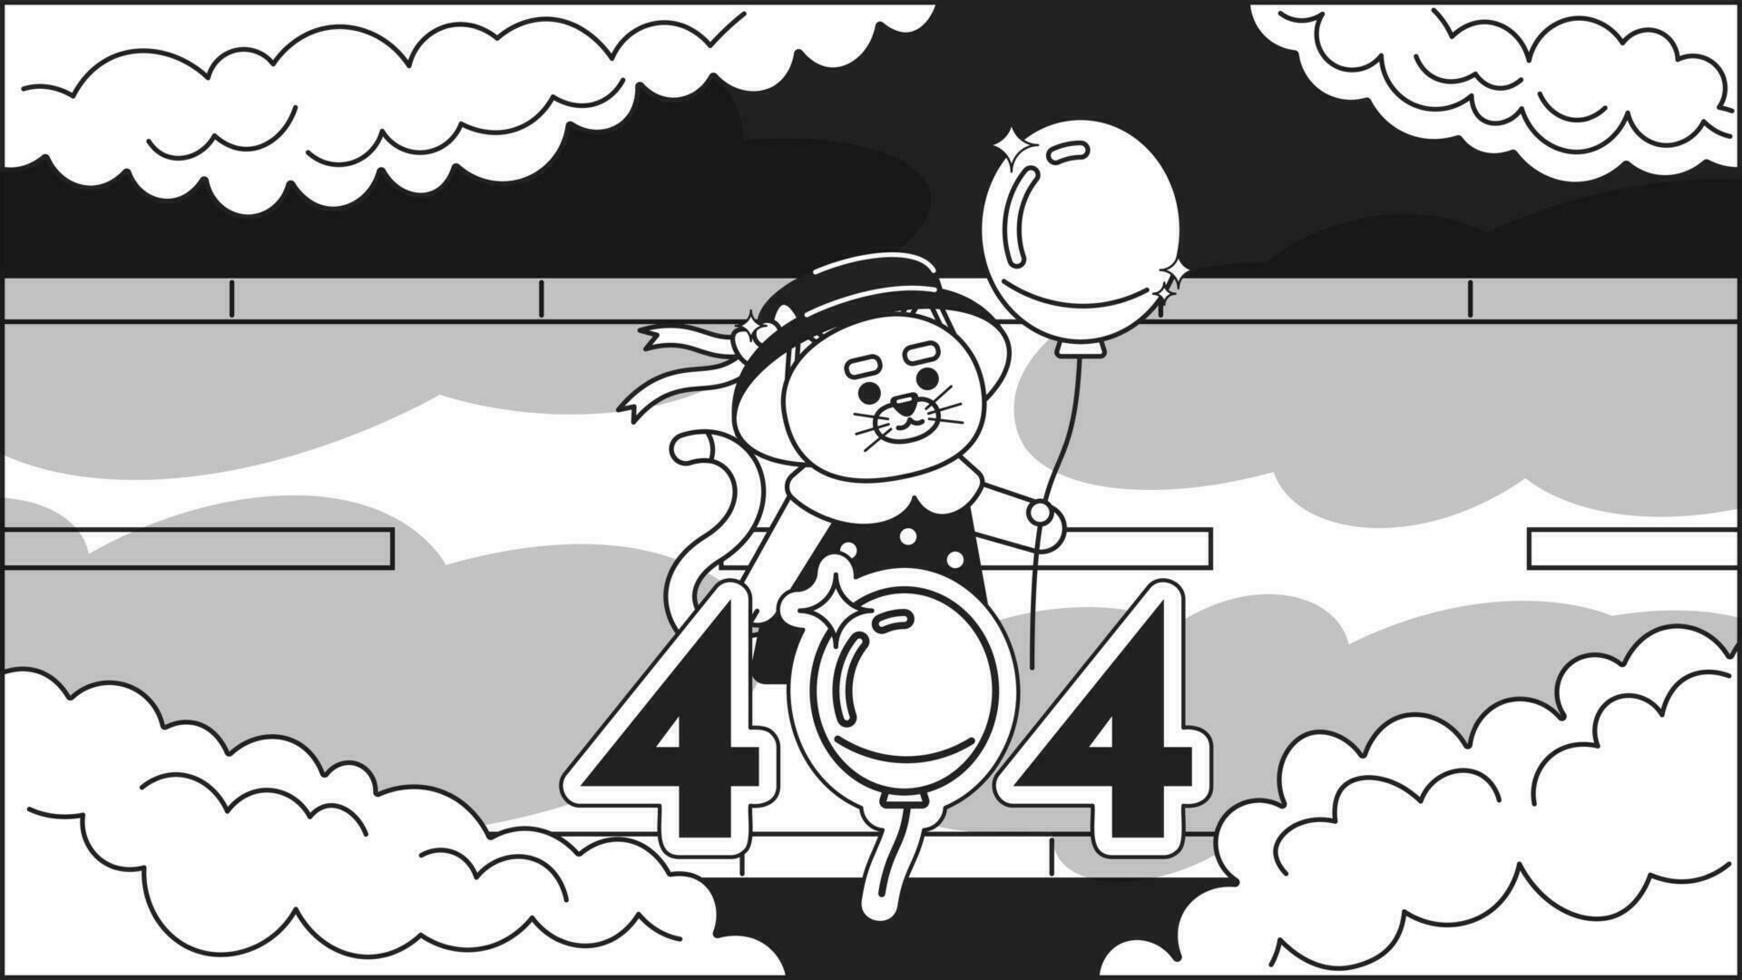 kawaii gato com balão assistindo nuvens Preto branco erro 404 instantâneo mensagem vetor